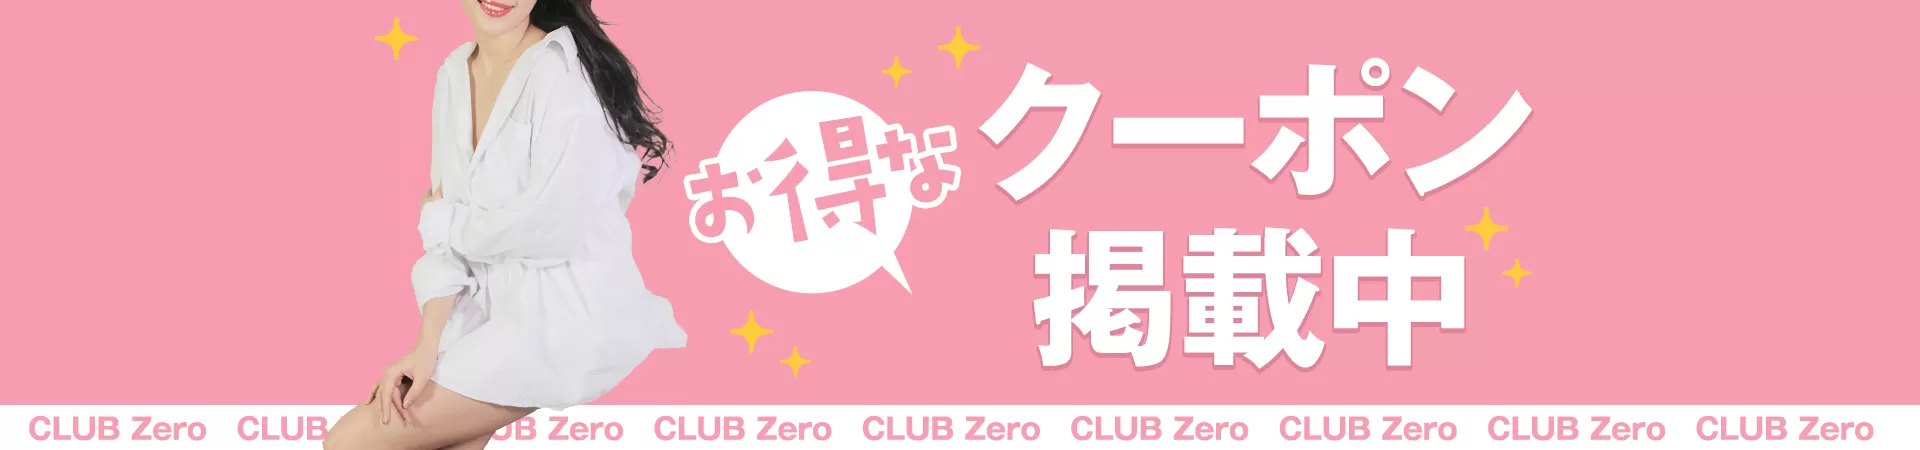 CLUB Zero(ゼロ)